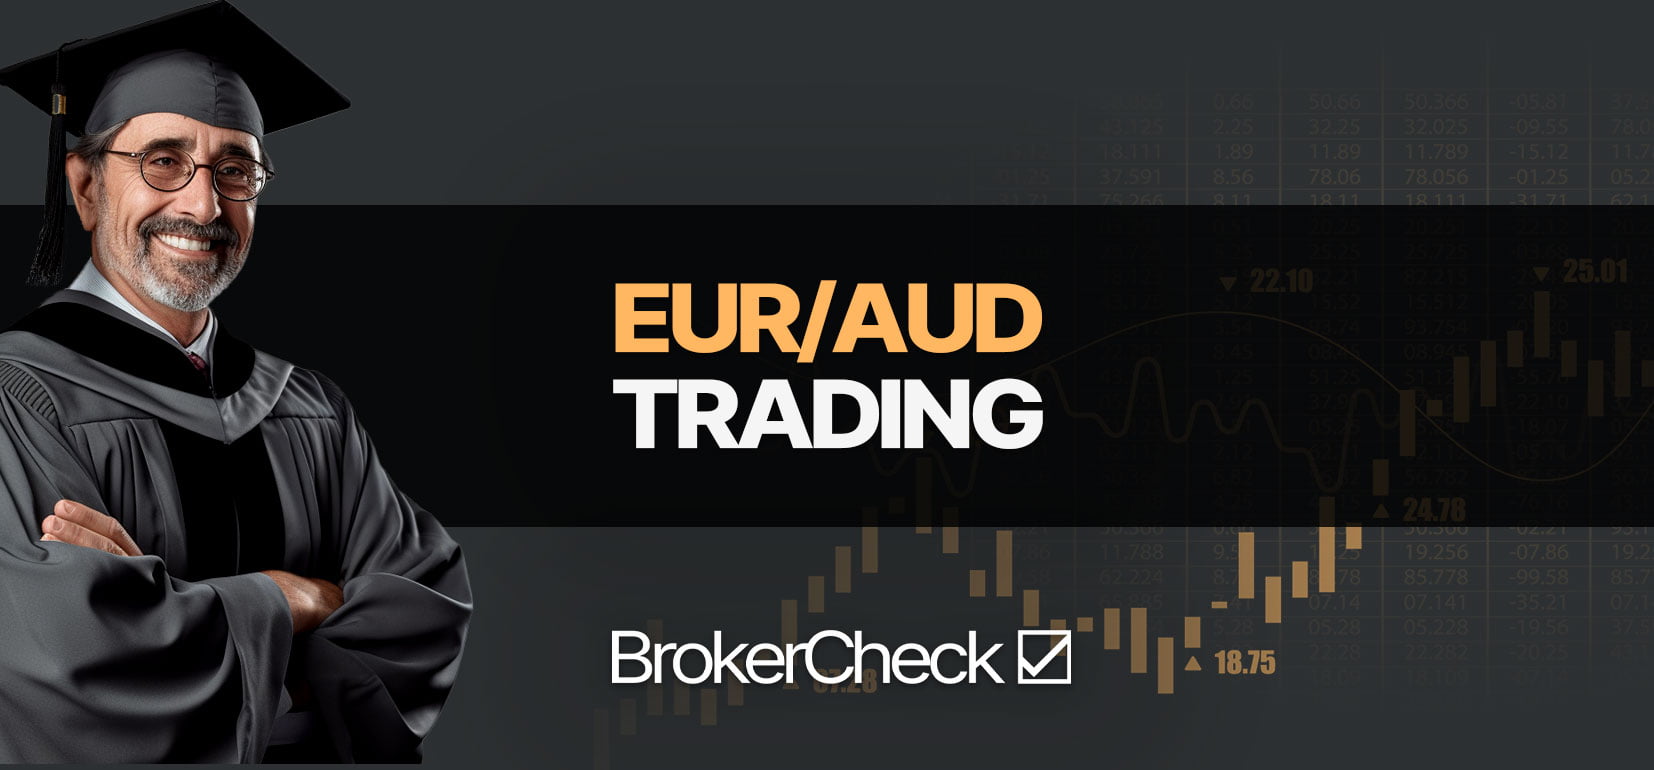 Hướng dẫn Trade EUR/AUD thành công